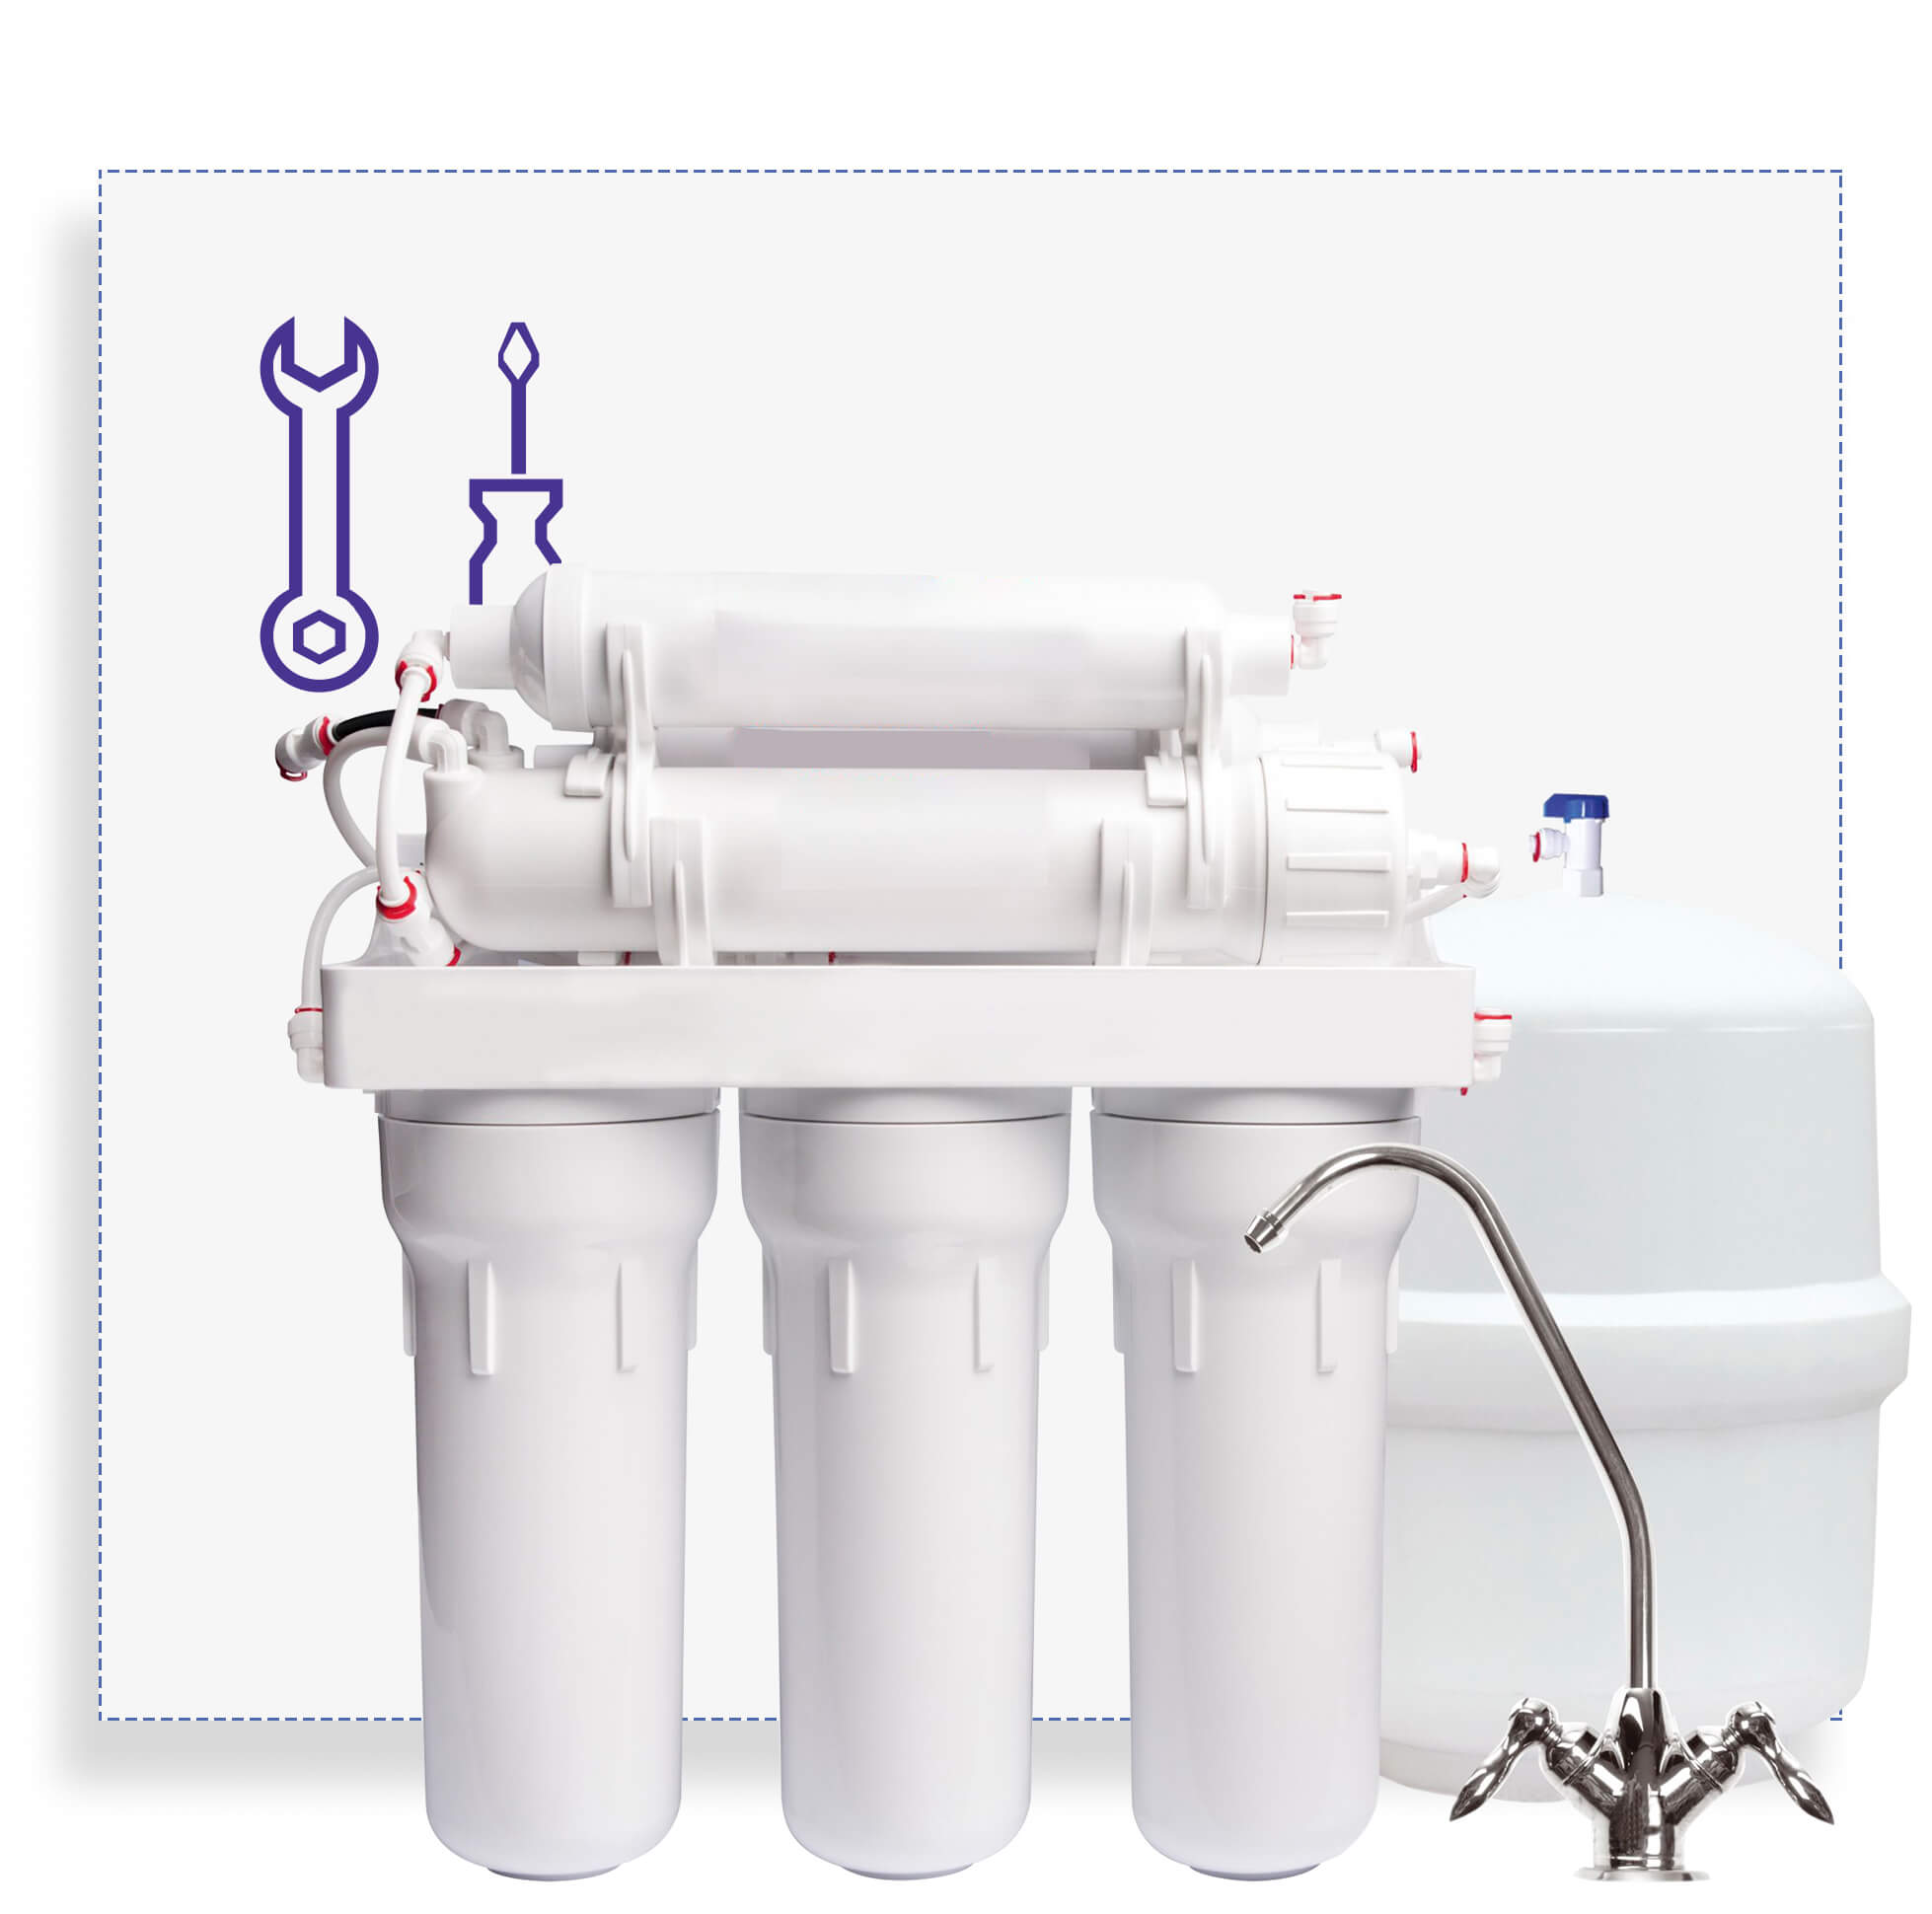 Сервис Регулярный сервис фильтров (компактного или классического) ВКЛЮЧАЯ замену основных фильтрующих картриджей для питьевой воды